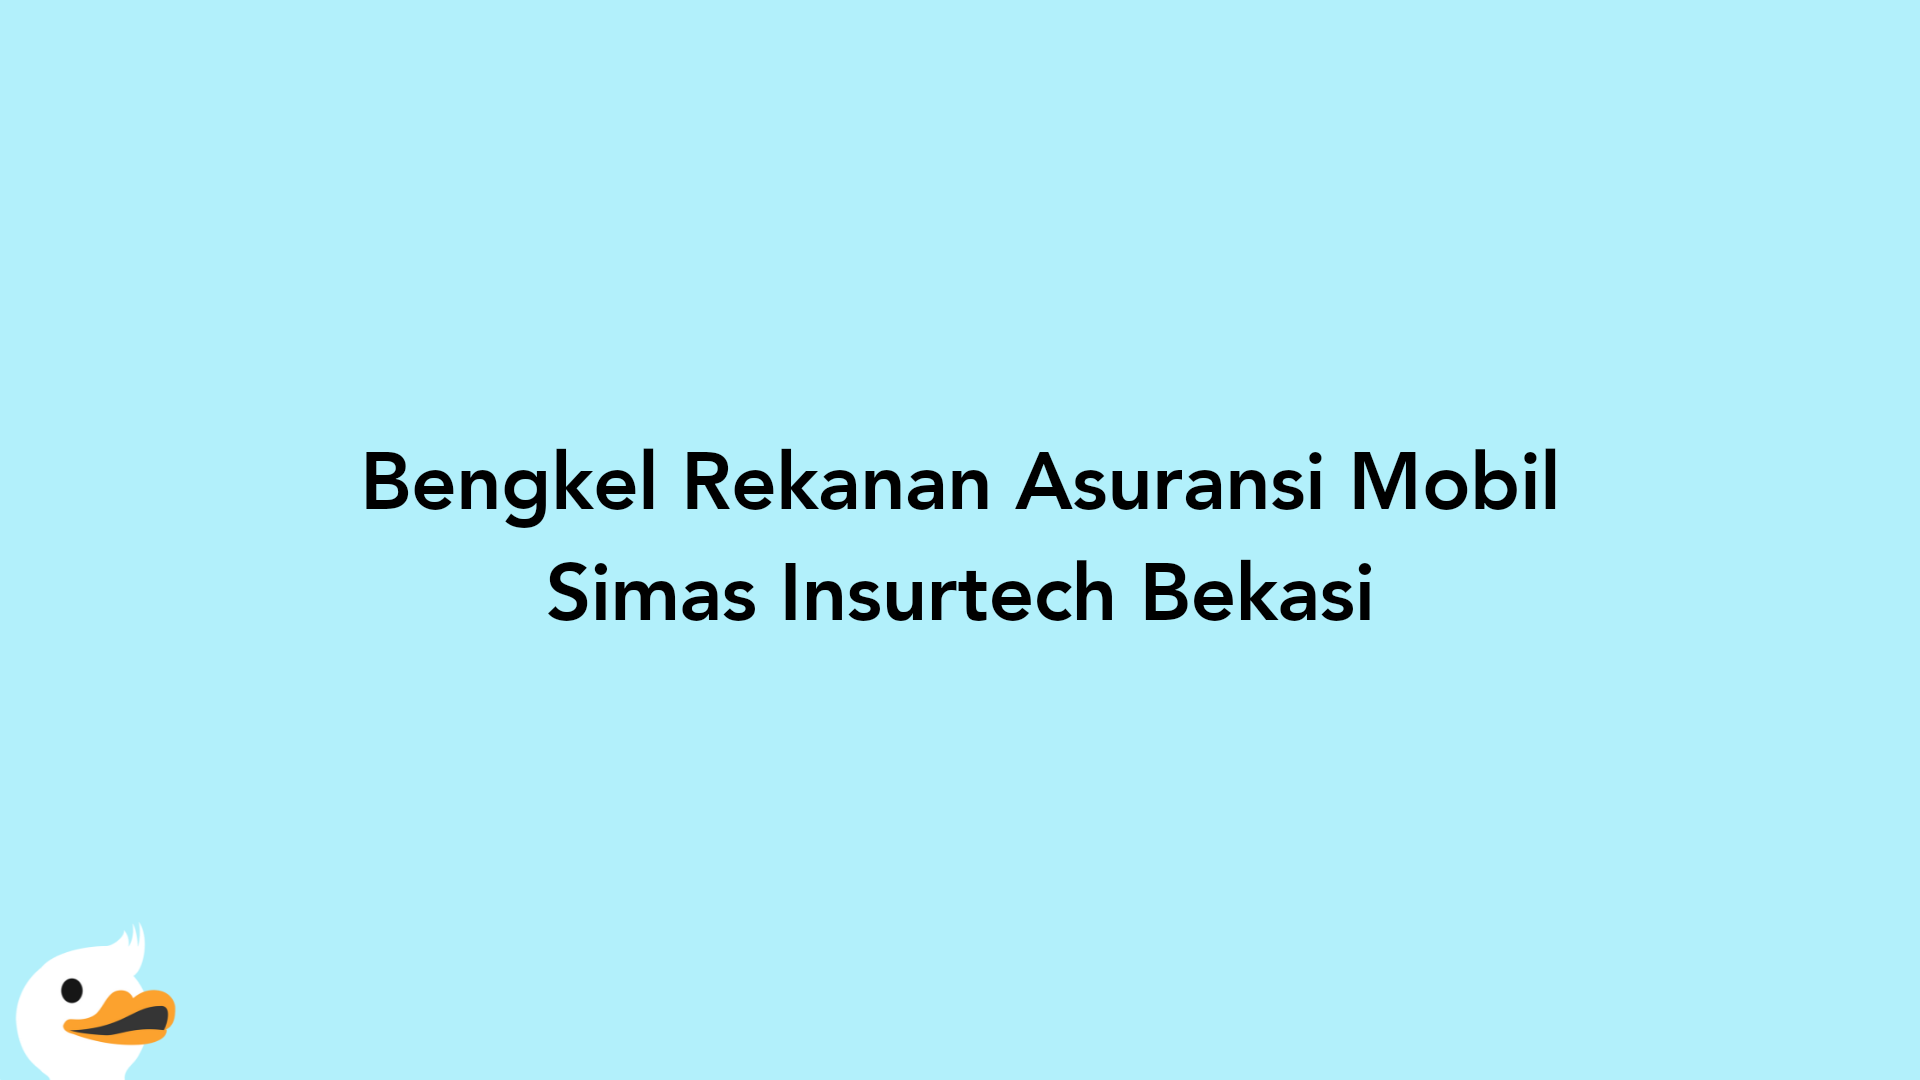 Bengkel Rekanan Asuransi Mobil Simas Insurtech Bekasi